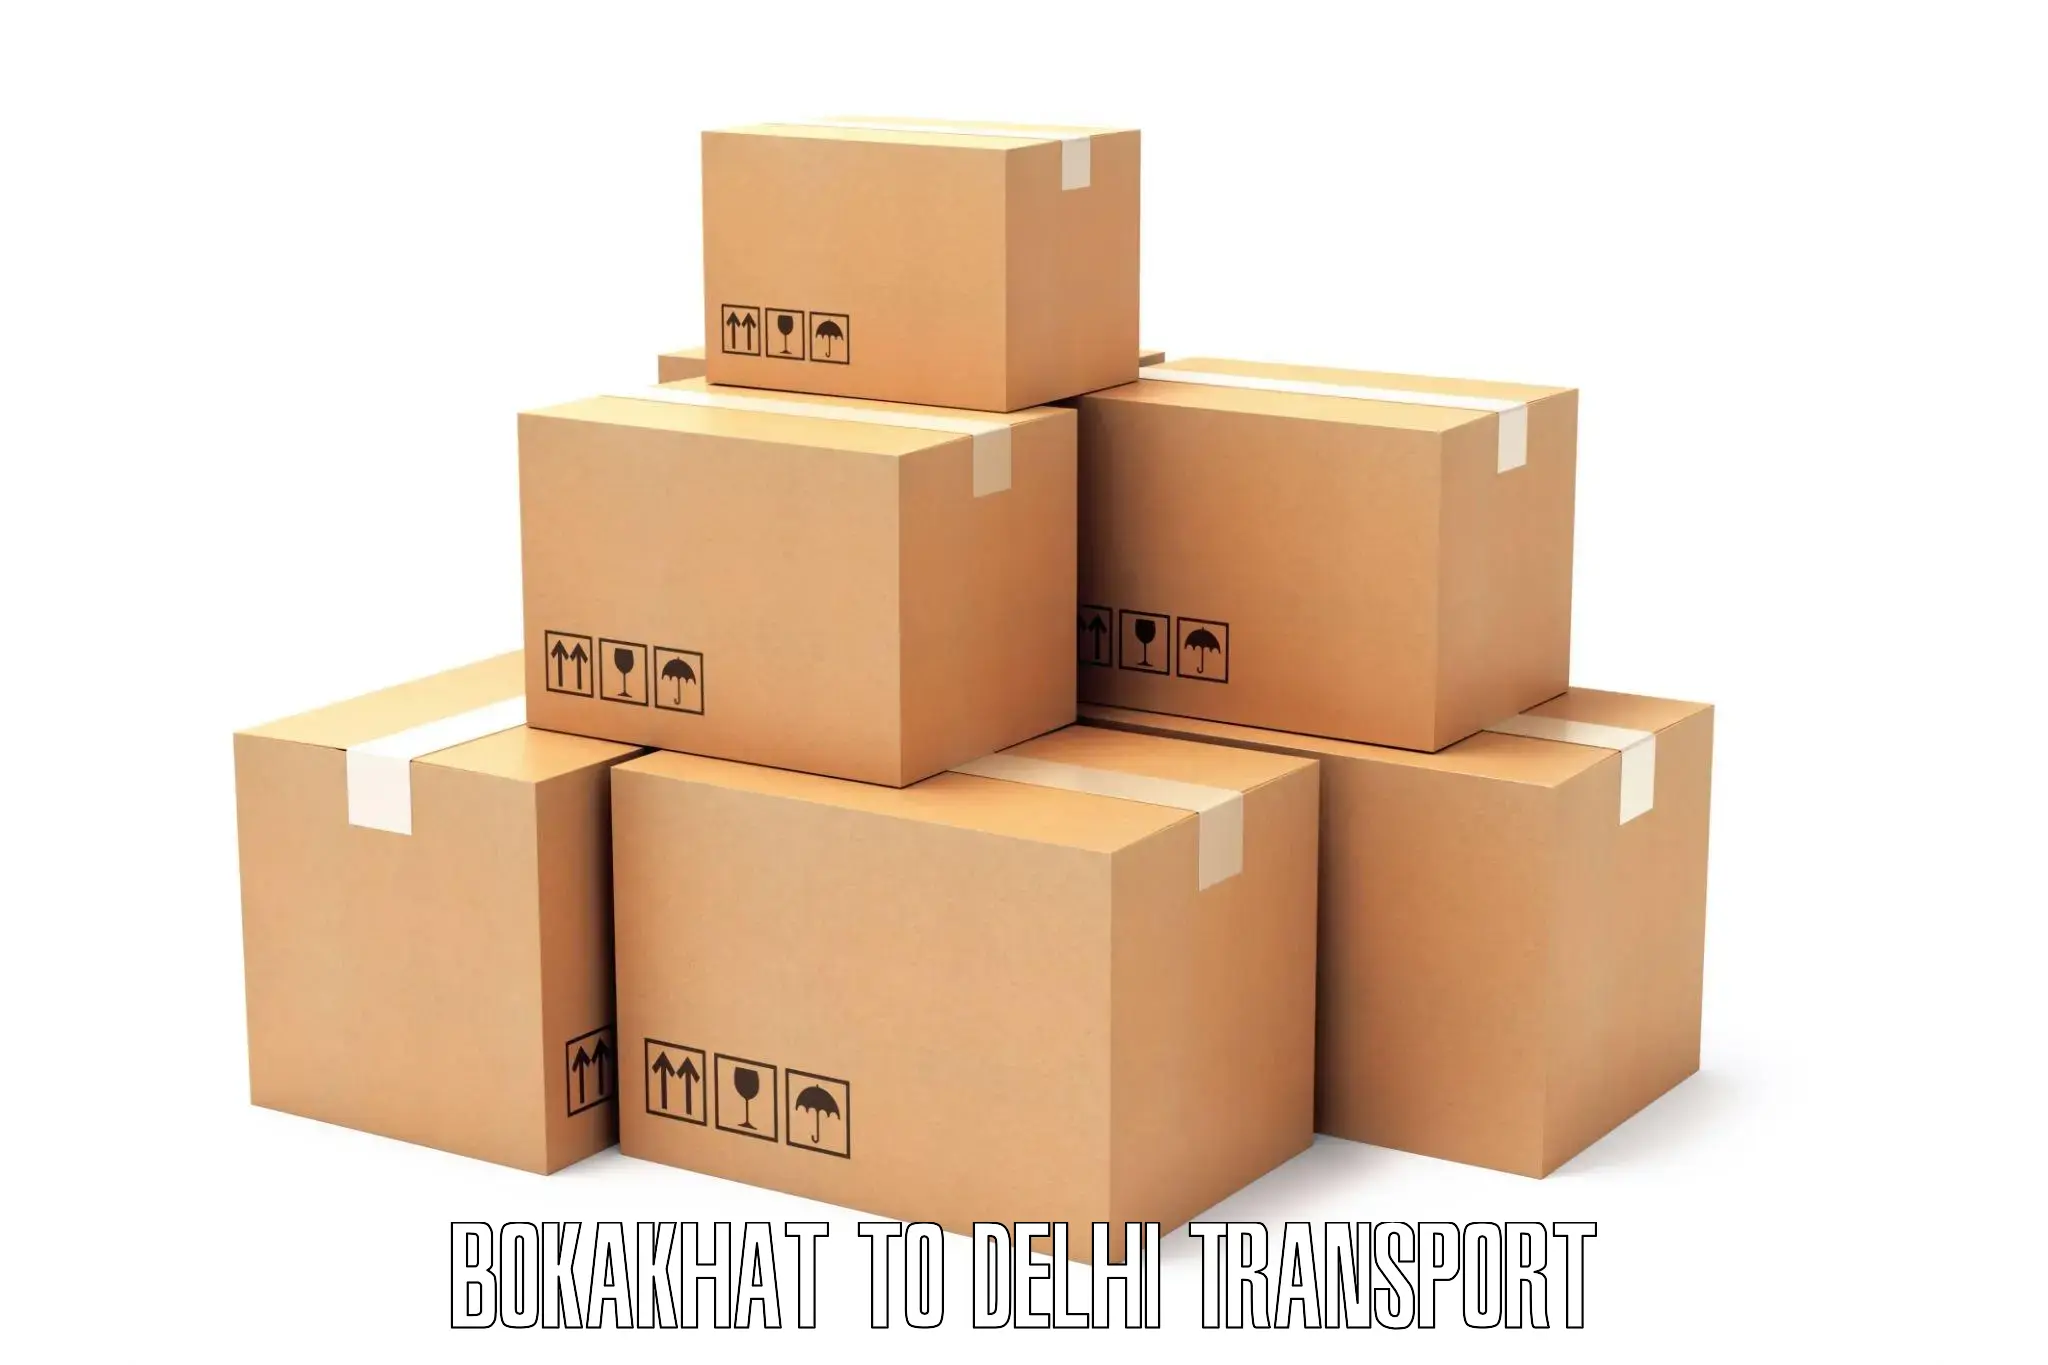 India truck logistics services Bokakhat to Delhi